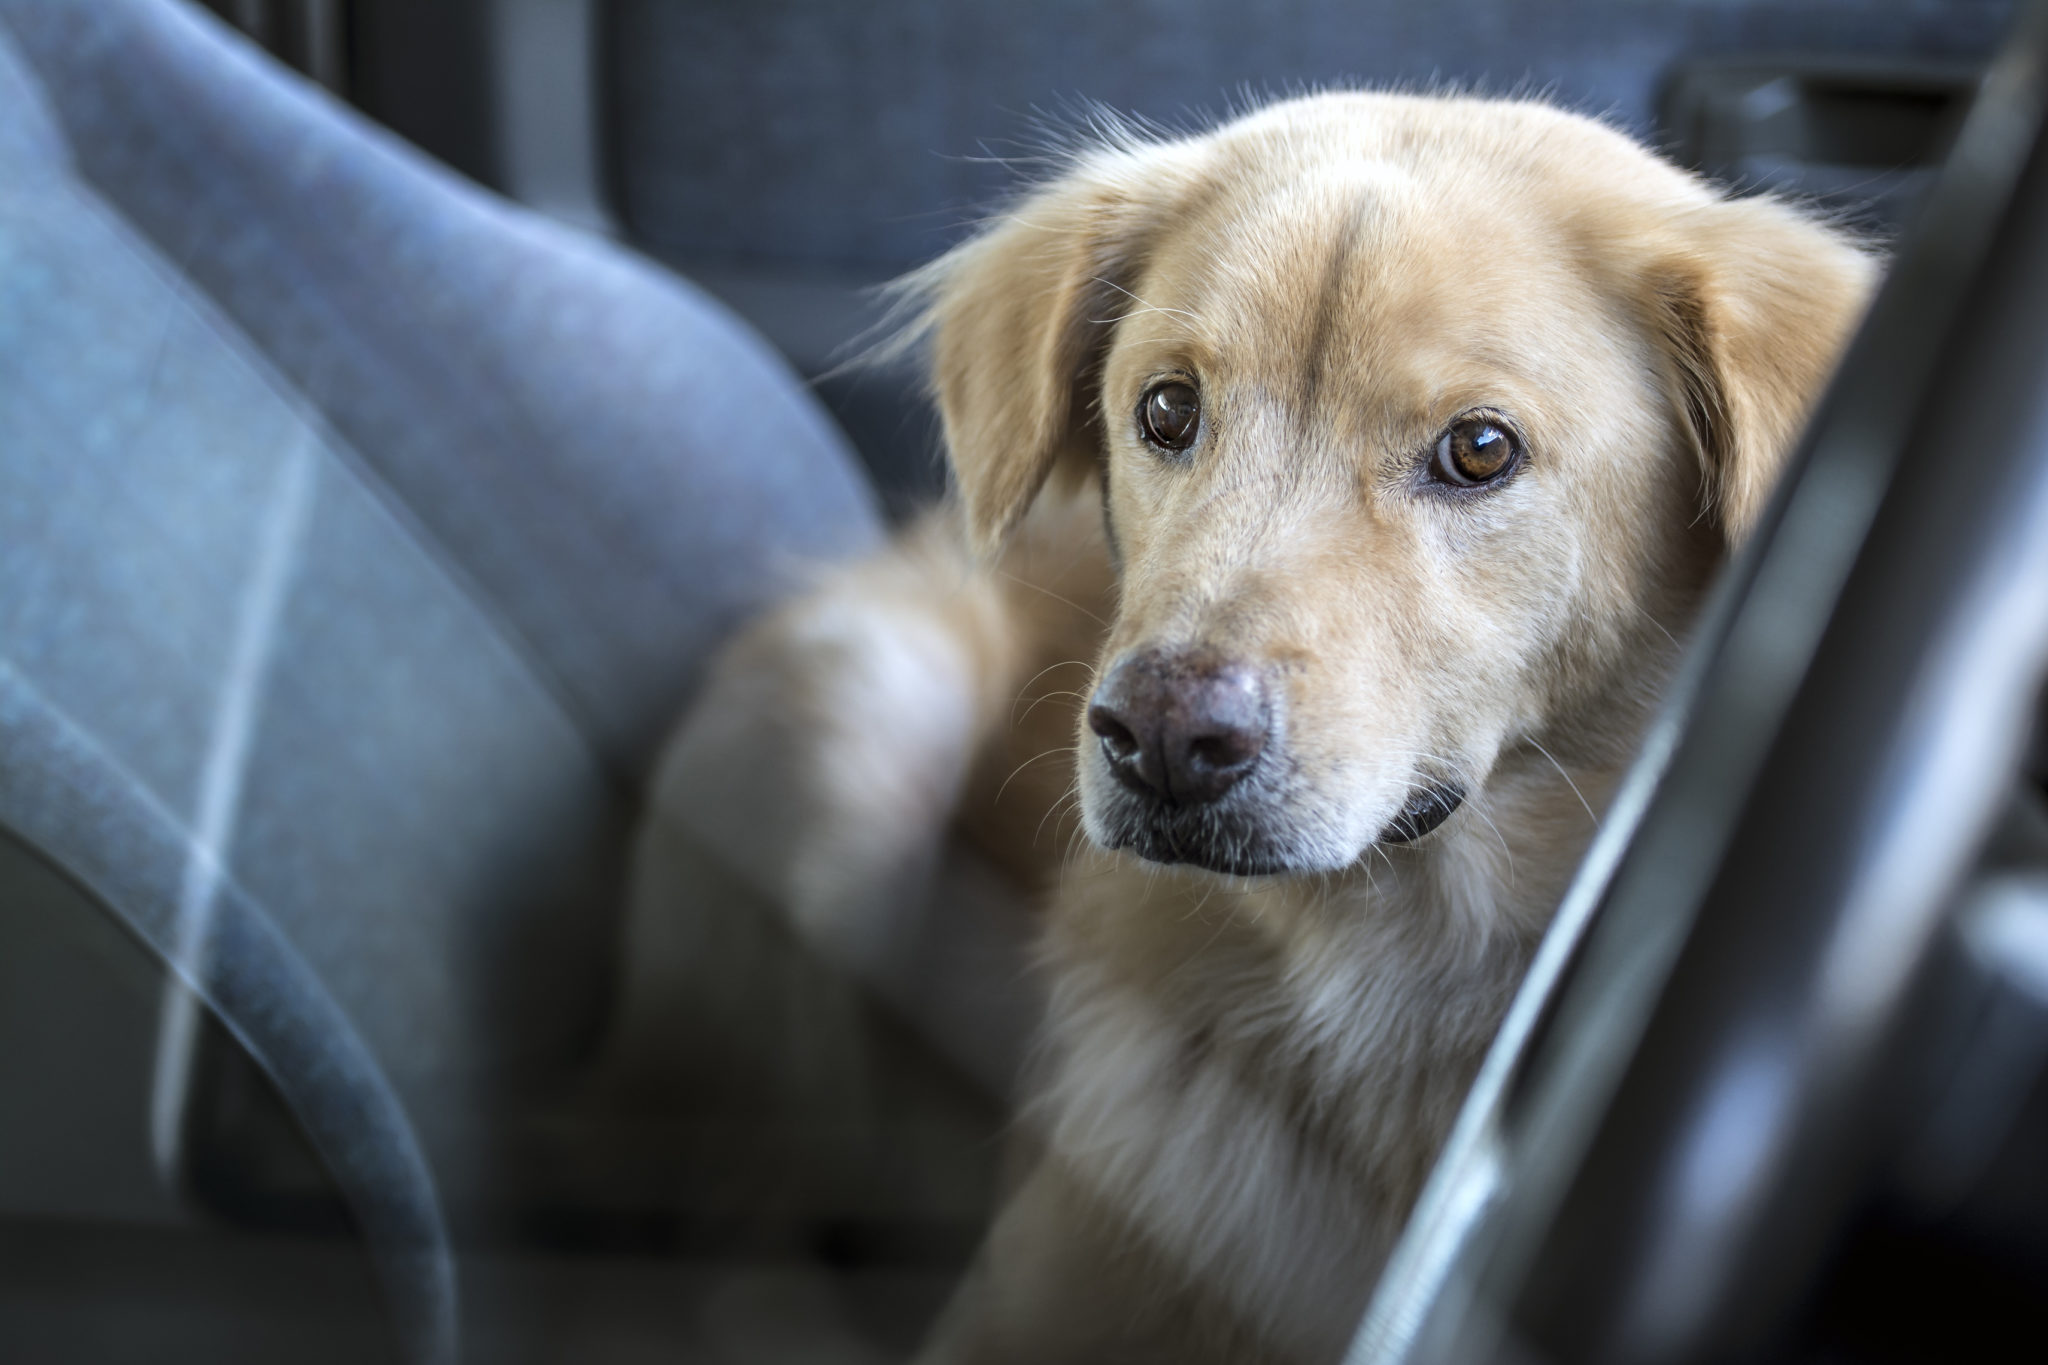 Votre chien en voiture en toute sécurité : 6 conseils